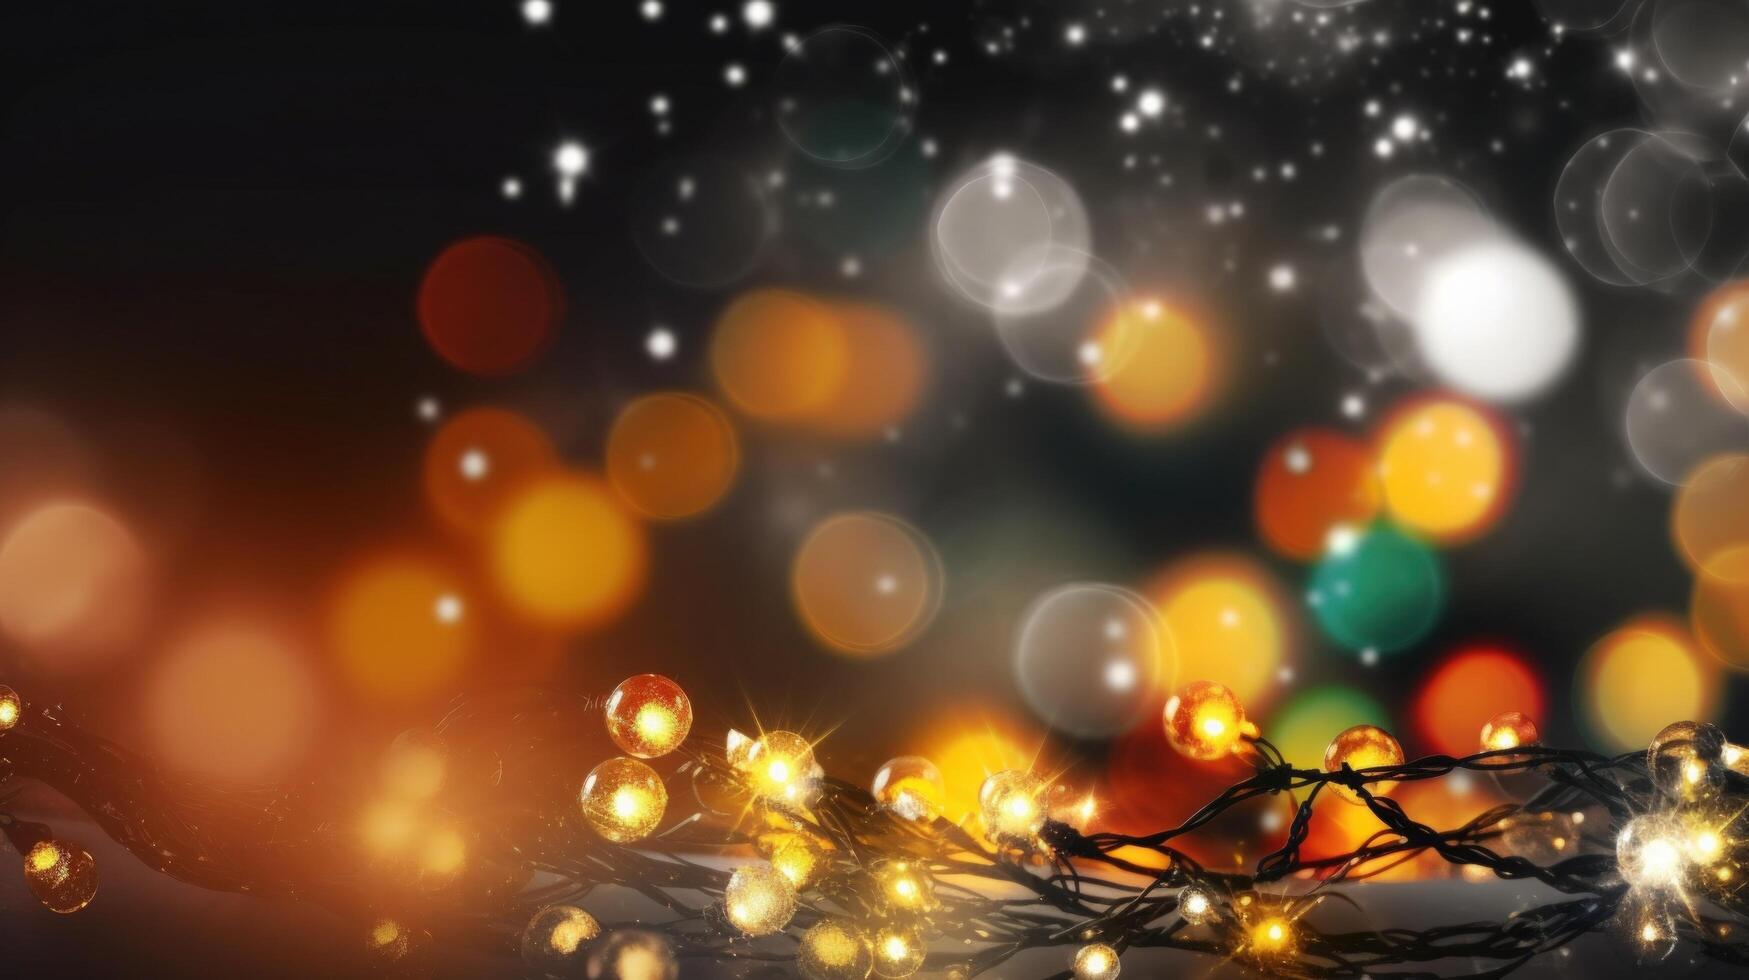 Magic Christmas lights background. Illustration photo